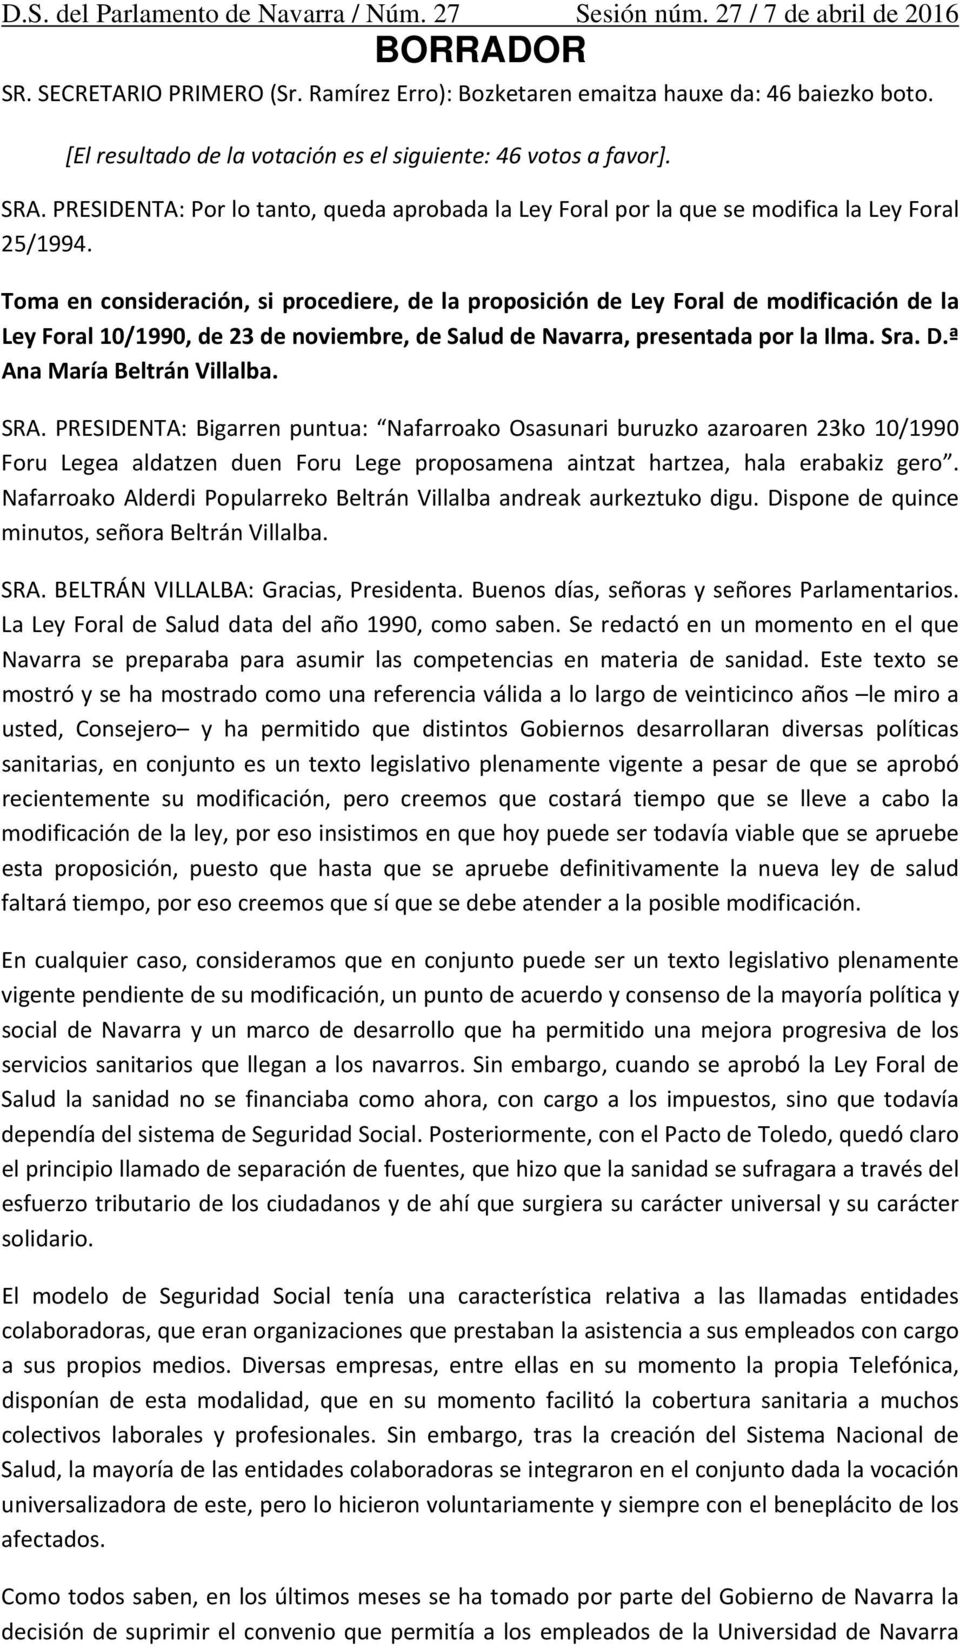 Toma en consideración, si procediere, de la proposición de Ley Foral de modificación de la Ley Foral 10/1990, de 23 de noviembre, de Salud de Navarra, presentada por la Ilma. Sra. D.